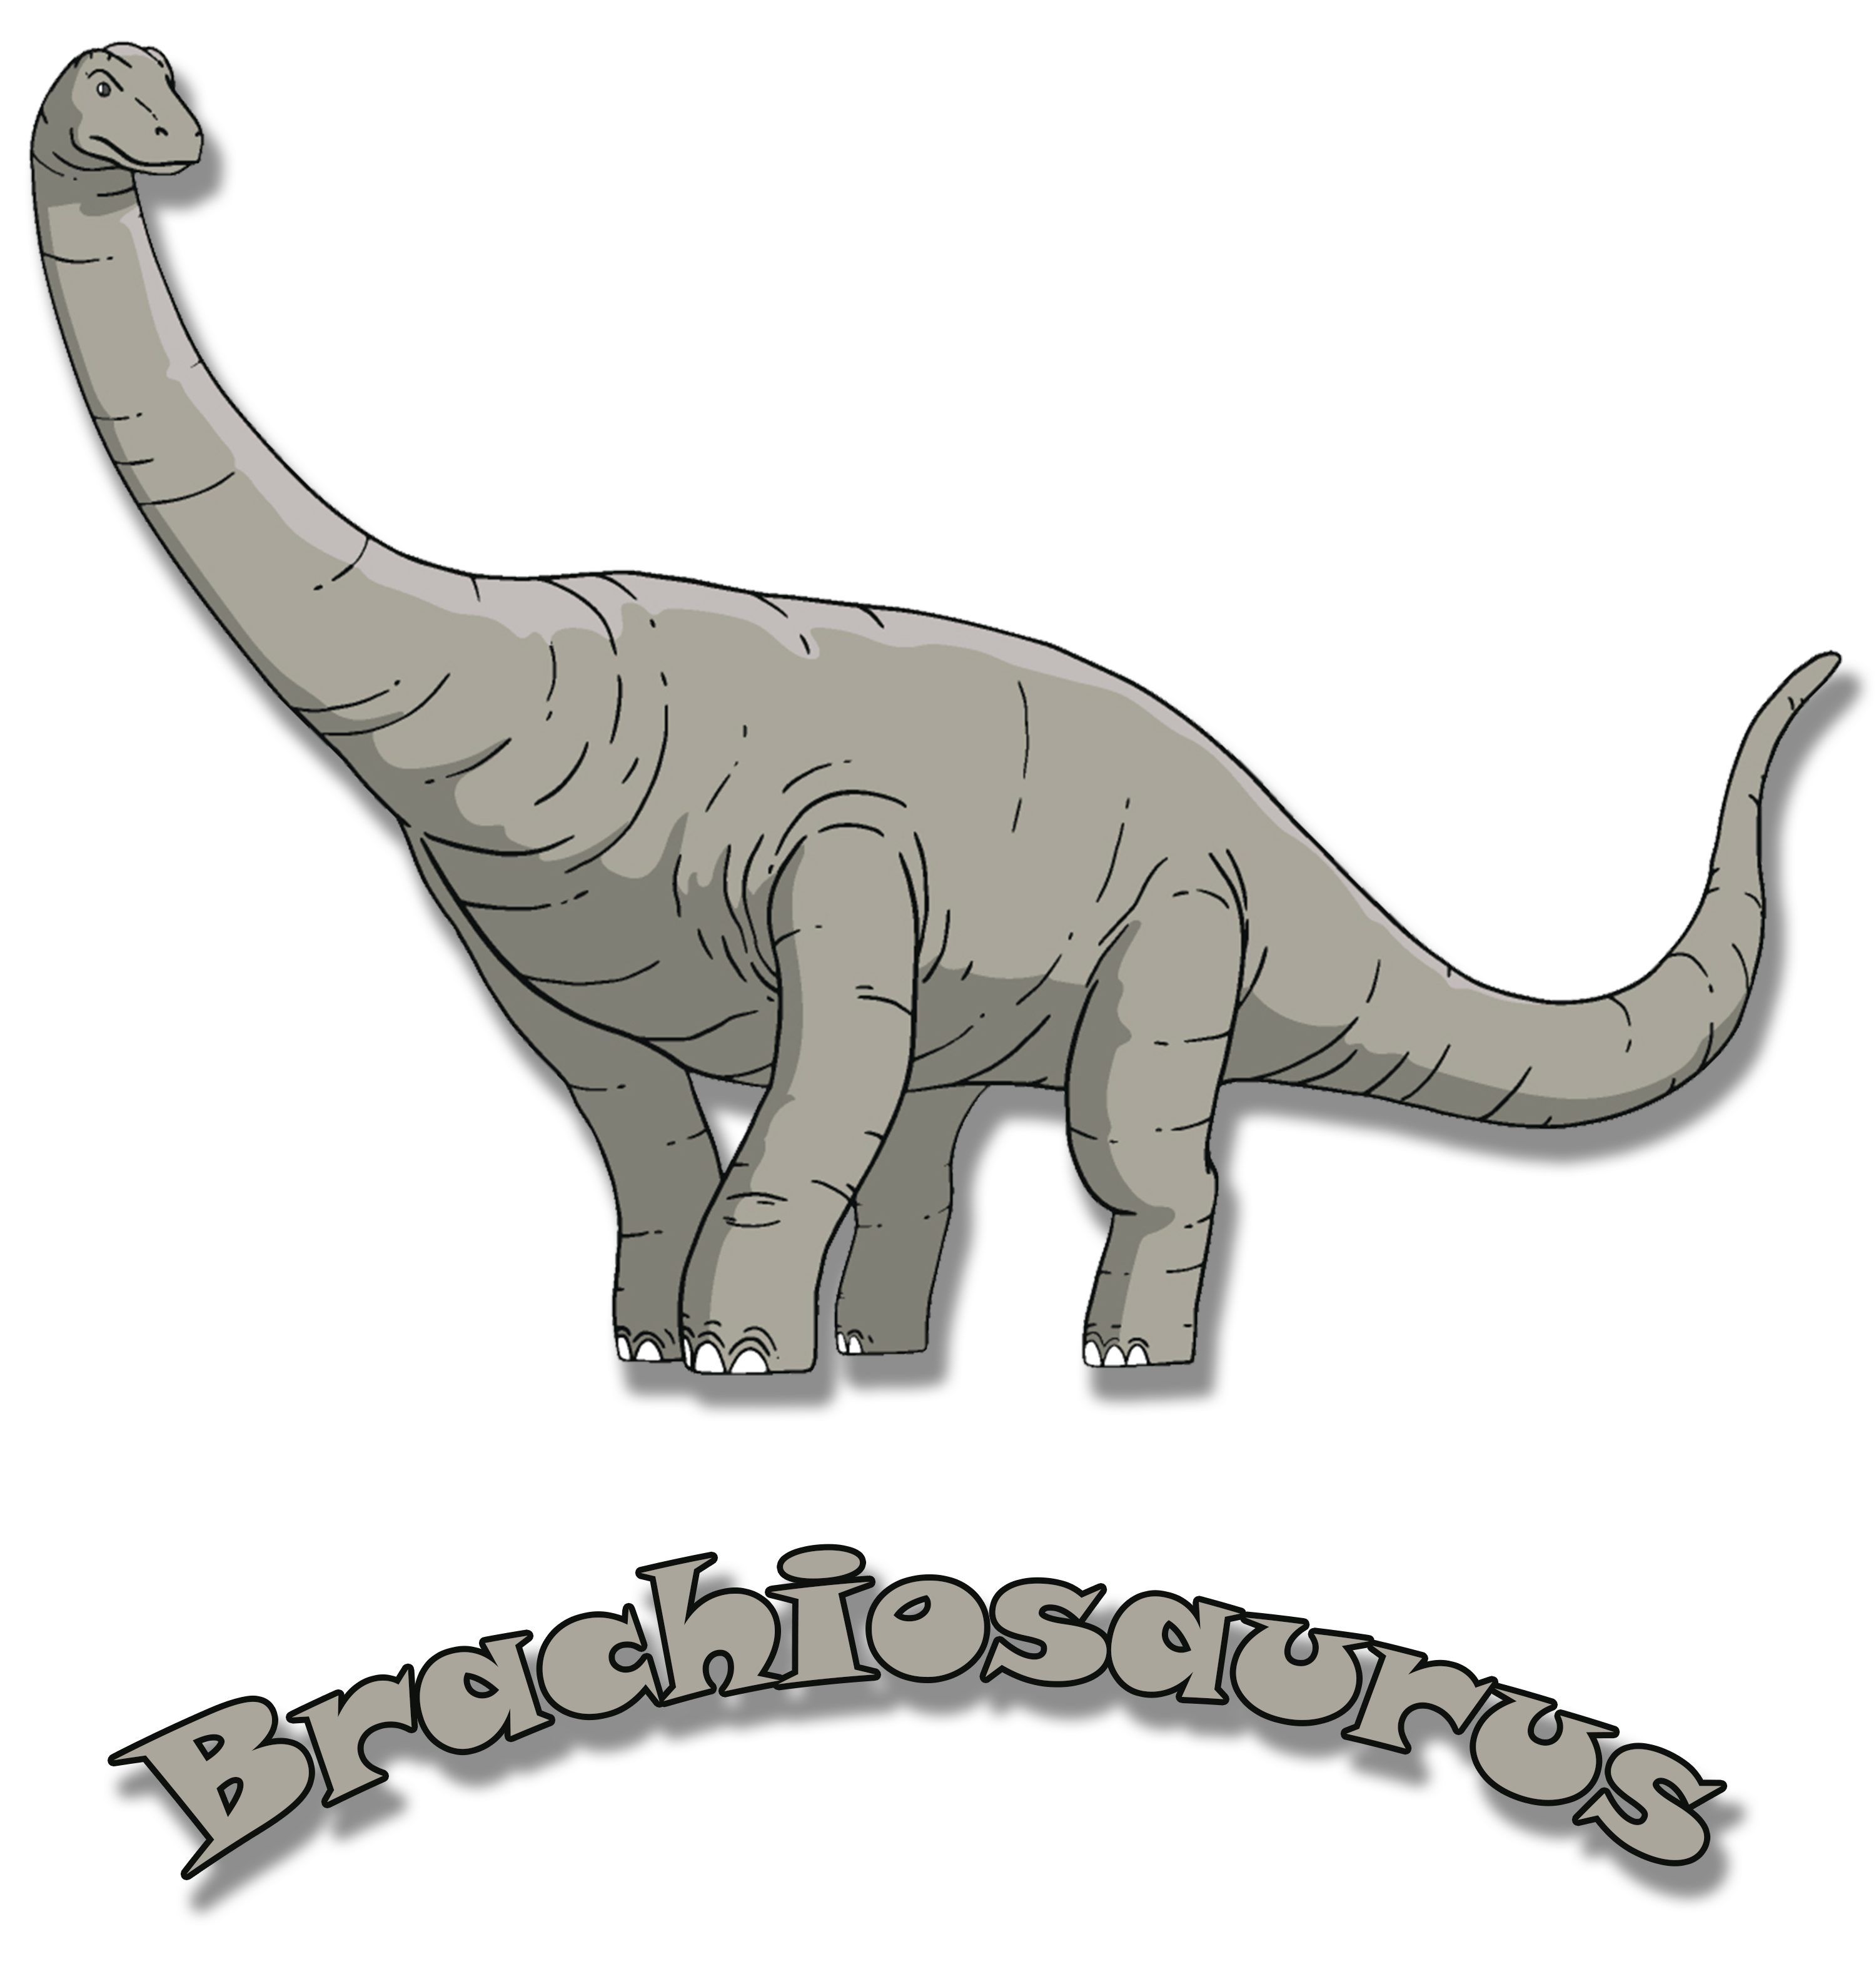 MyDesign24 Print-Shirt Kinder blau, weiß, i66 schwarz, bedrucktes rot, Dino, Baumwollshirt mit Brachiosaurus mit T-Shirt